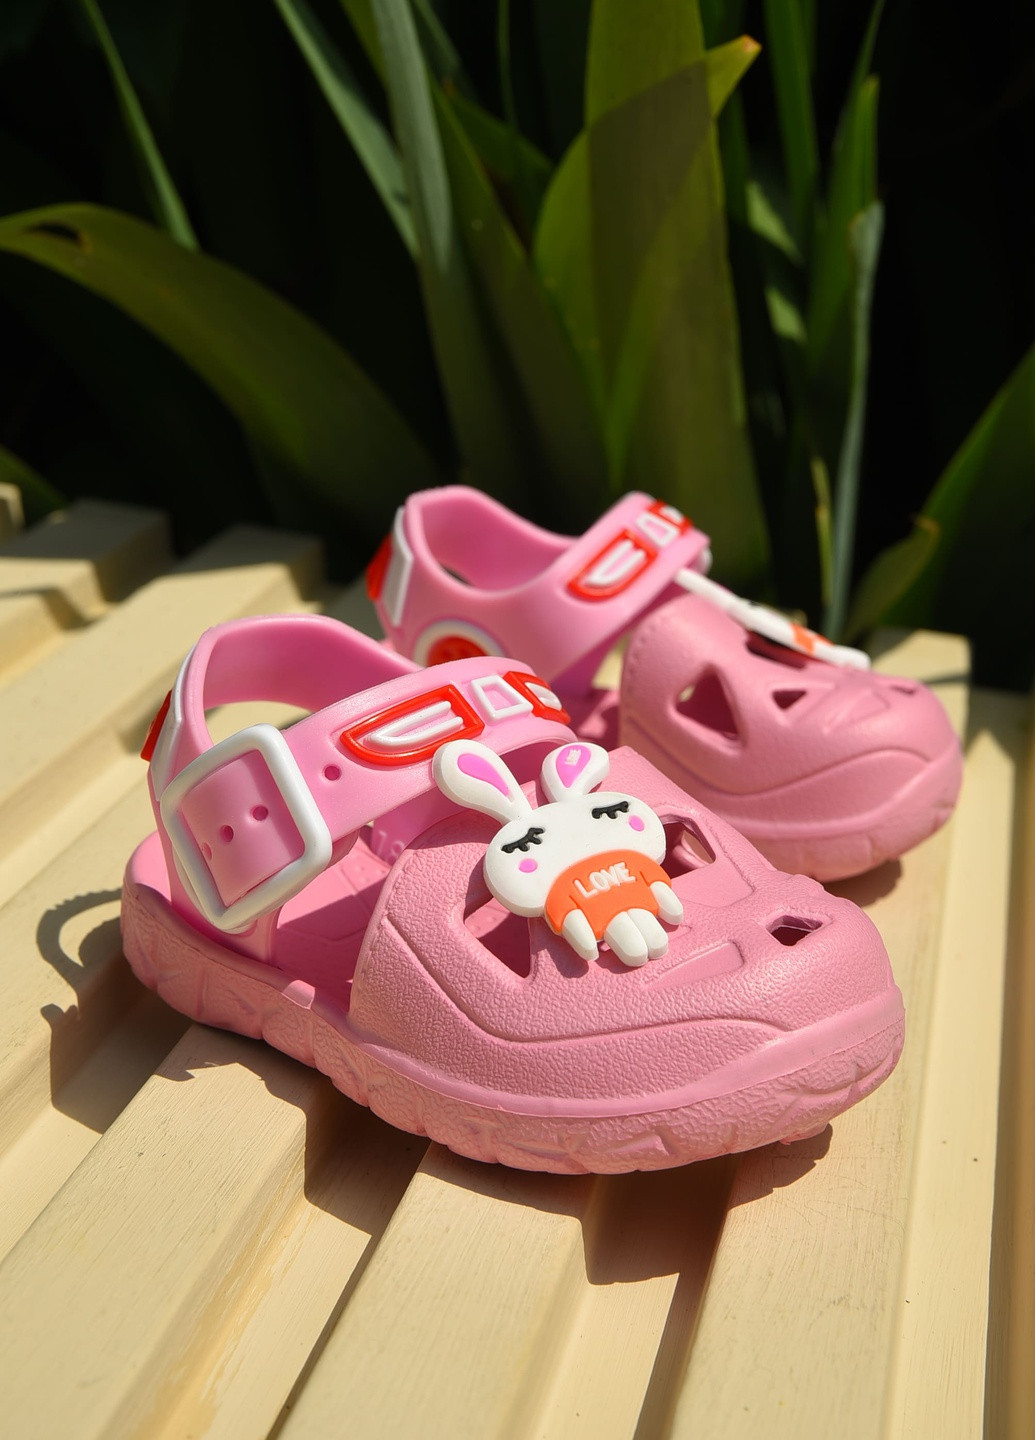 Розовые пляжные сандали детские пена для девочки розового цвета Let's Shop с ремешком